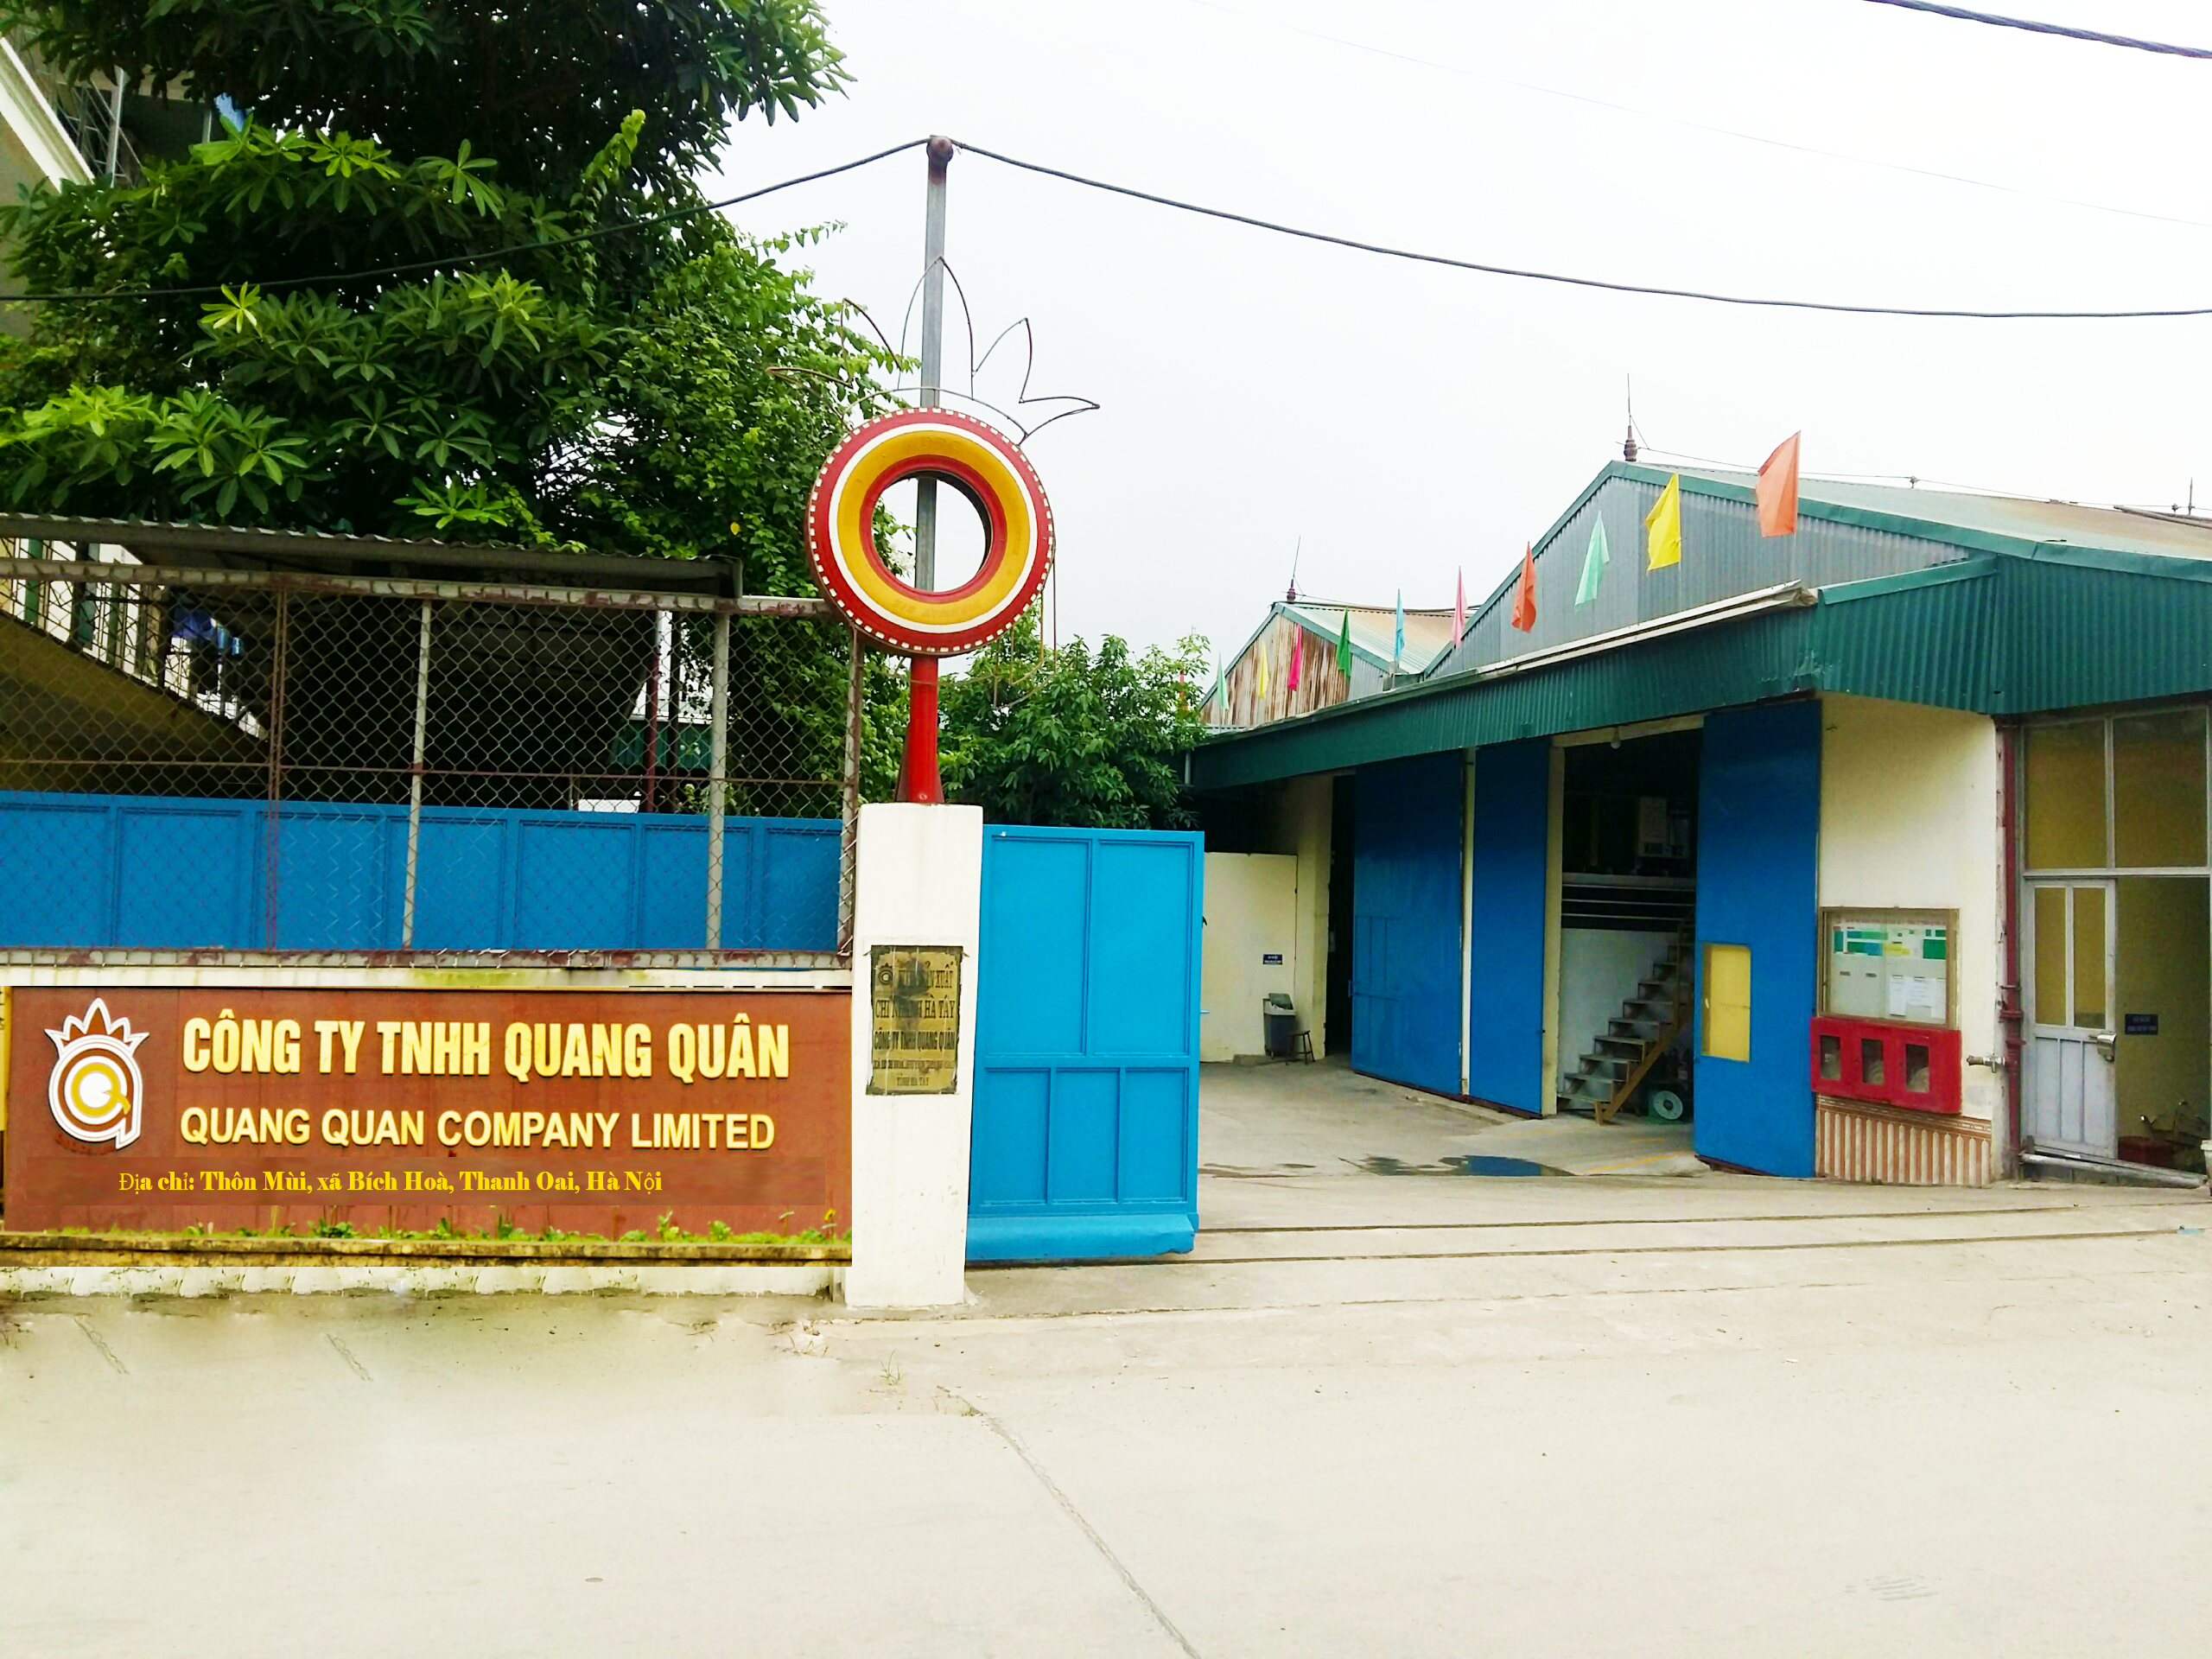 Công ty TNHH Quang Quân - Hà Tây - Thôn Mùi, Xã Bích Hoà, huyện Thanh Oai, Hà Nội